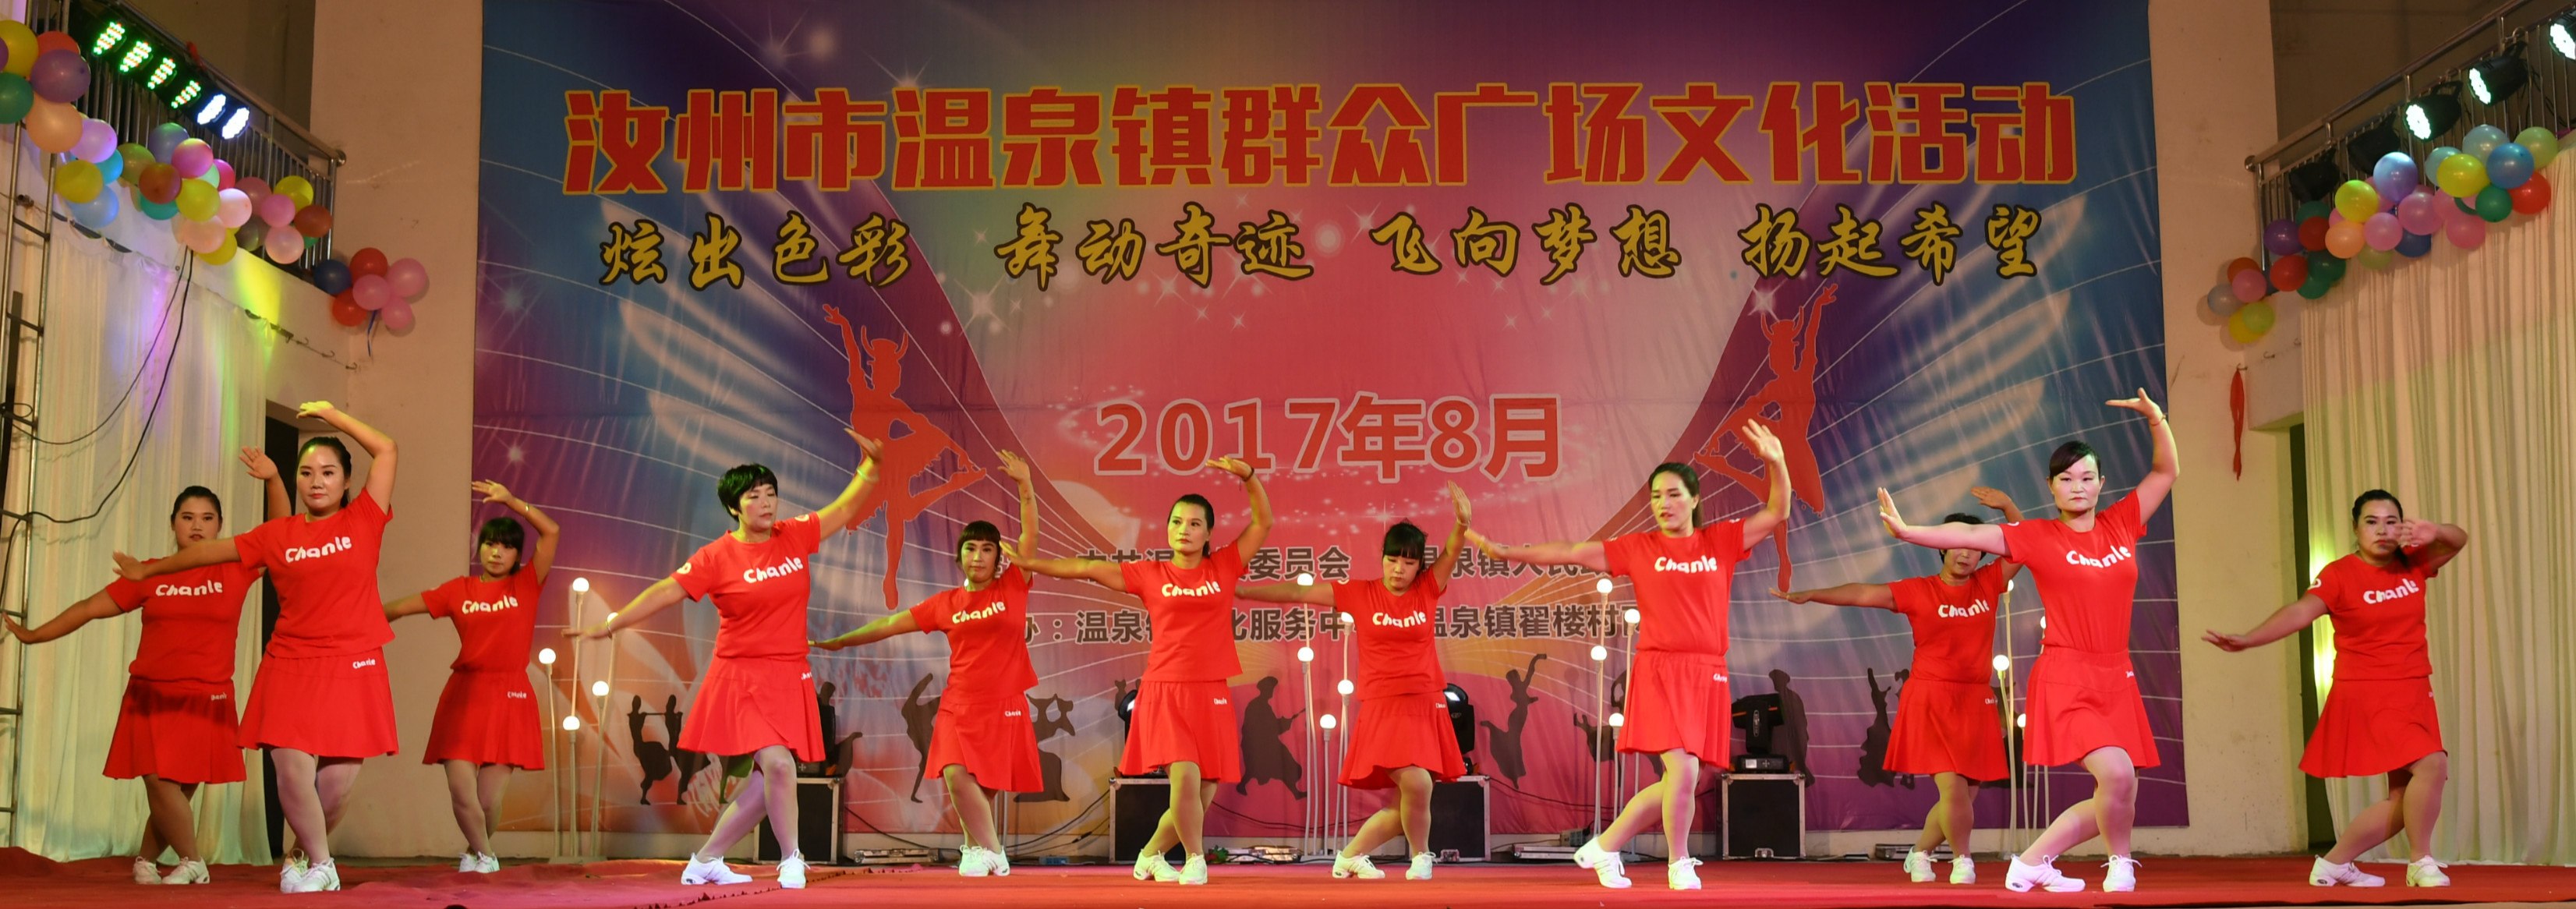 汝州温泉举办群众广场文化活动汇演 丰富群众